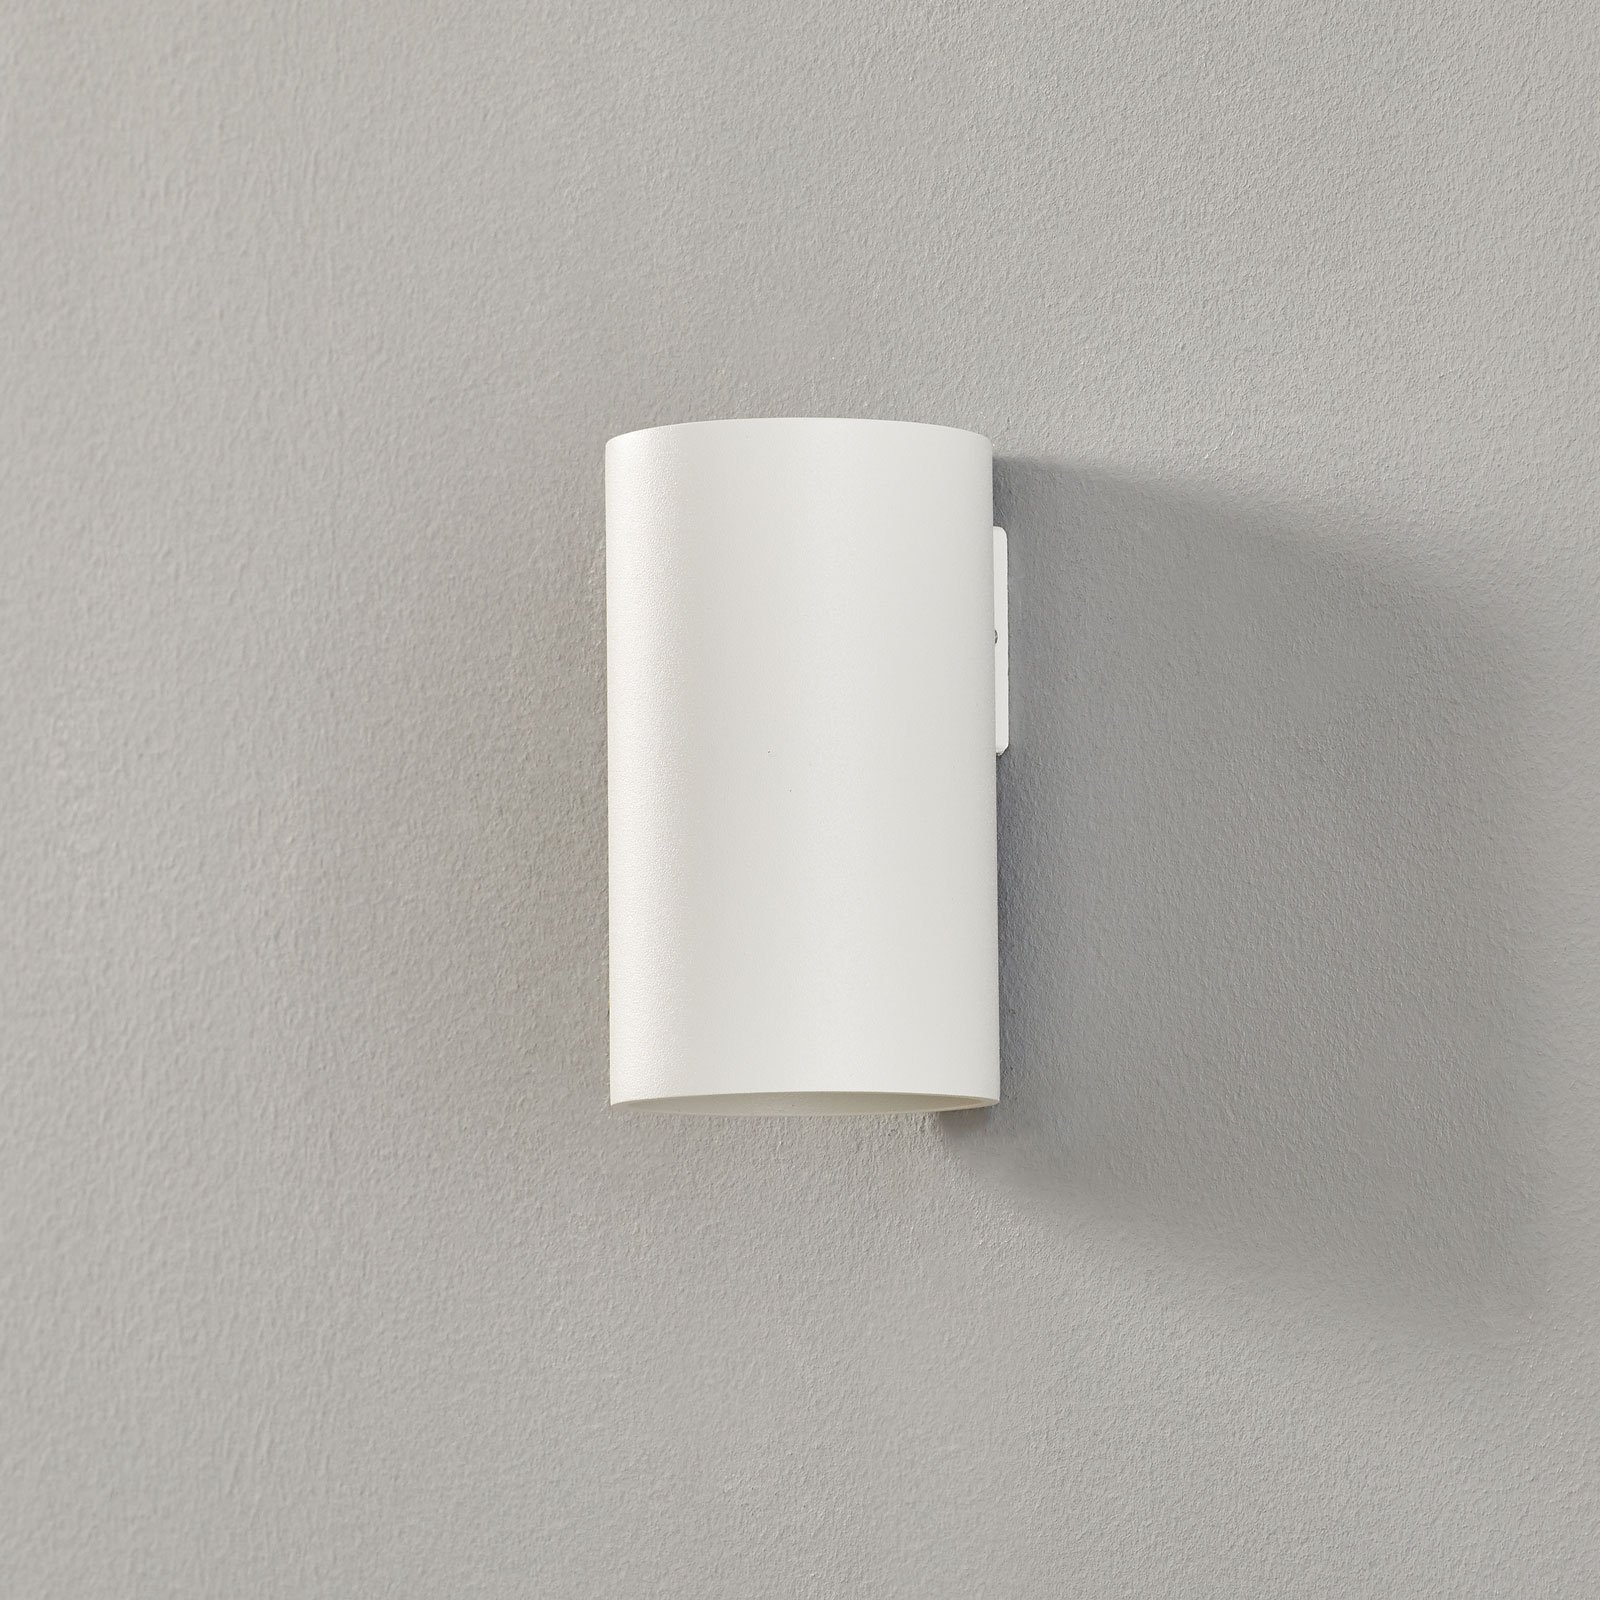 WEVER & DUCRÉ Ray mini 1.0 nástěnná lampa bílá